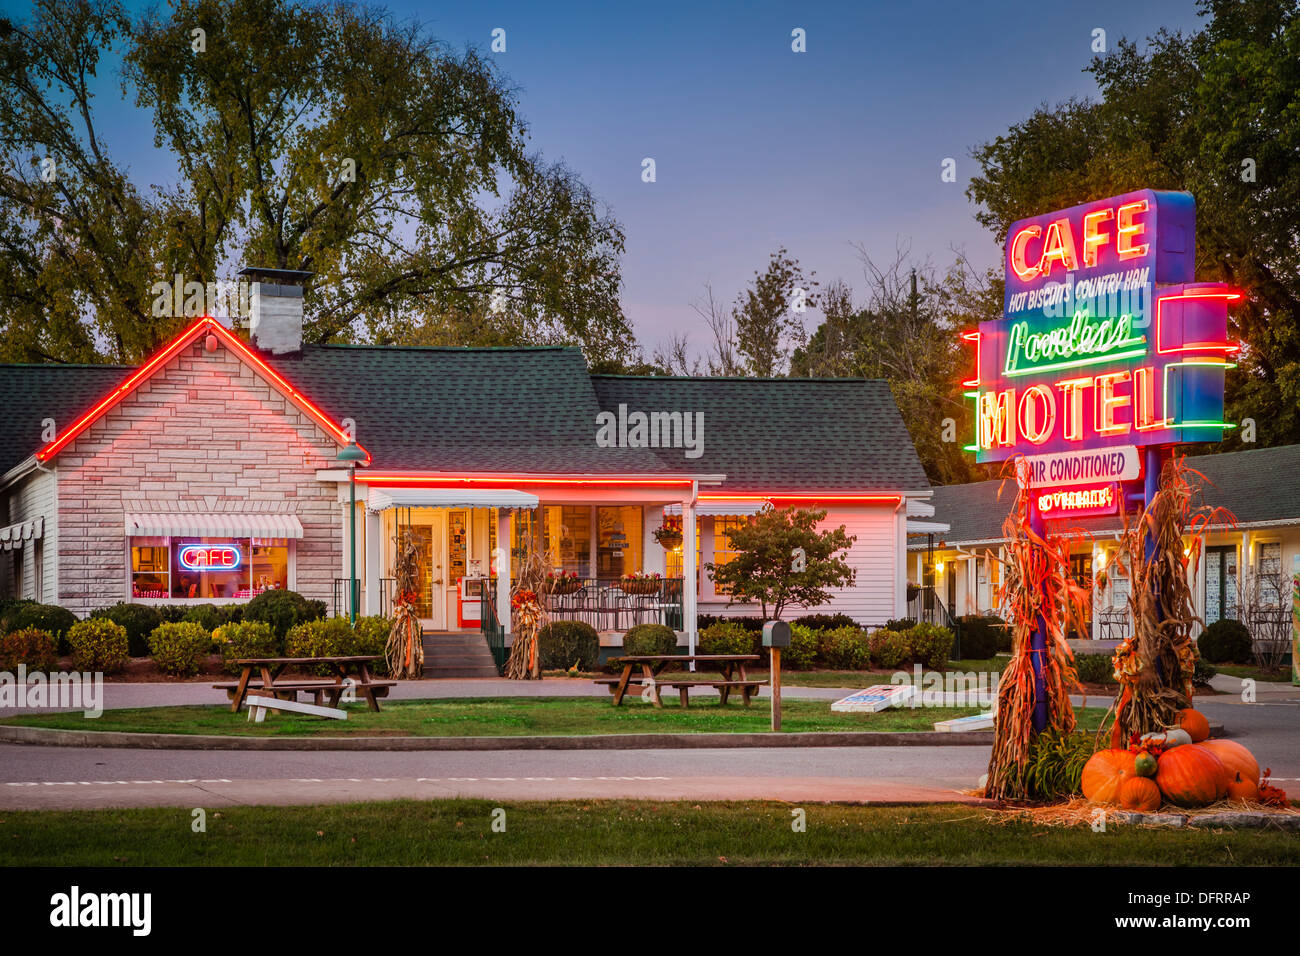 Die berühmte Loveless Cafe und Motel in der Nähe von Nashville Tennessee, USA Stockfoto